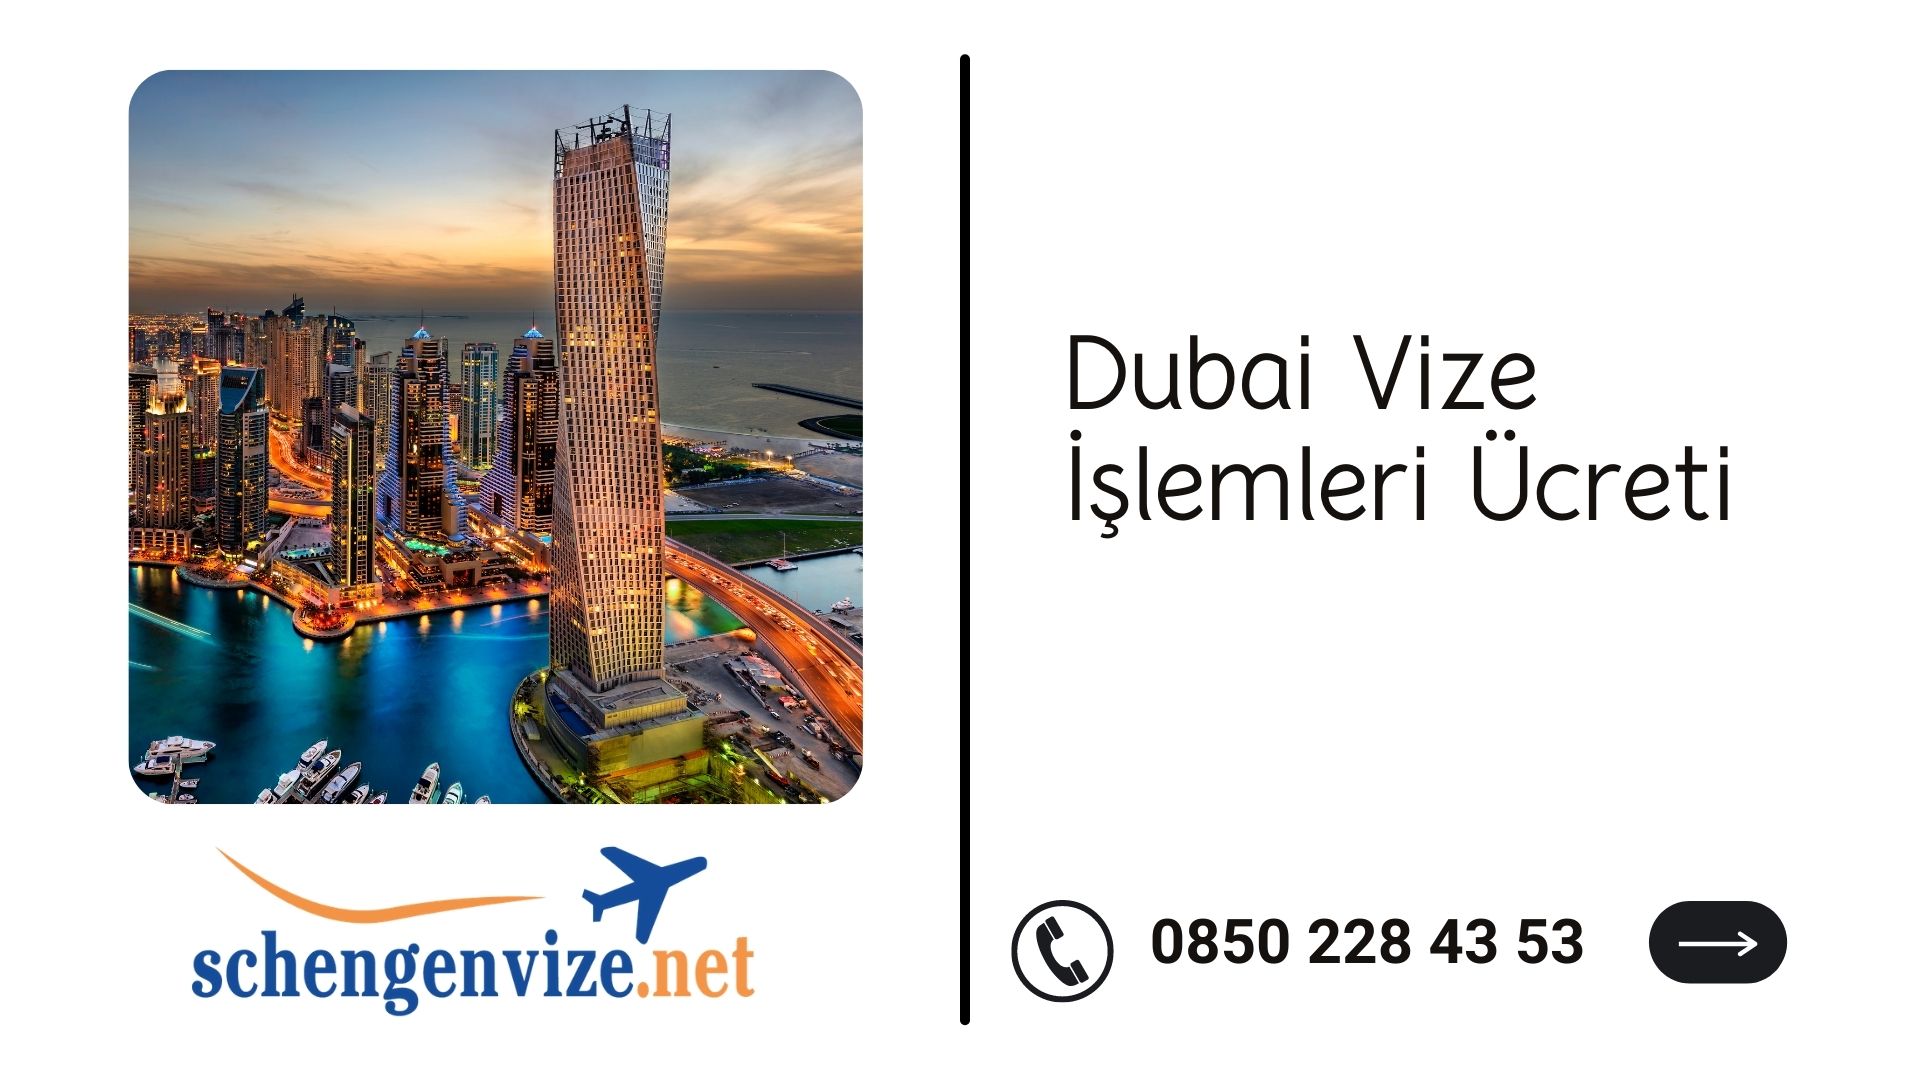 Dubai Vize İşlemleri Ücreti